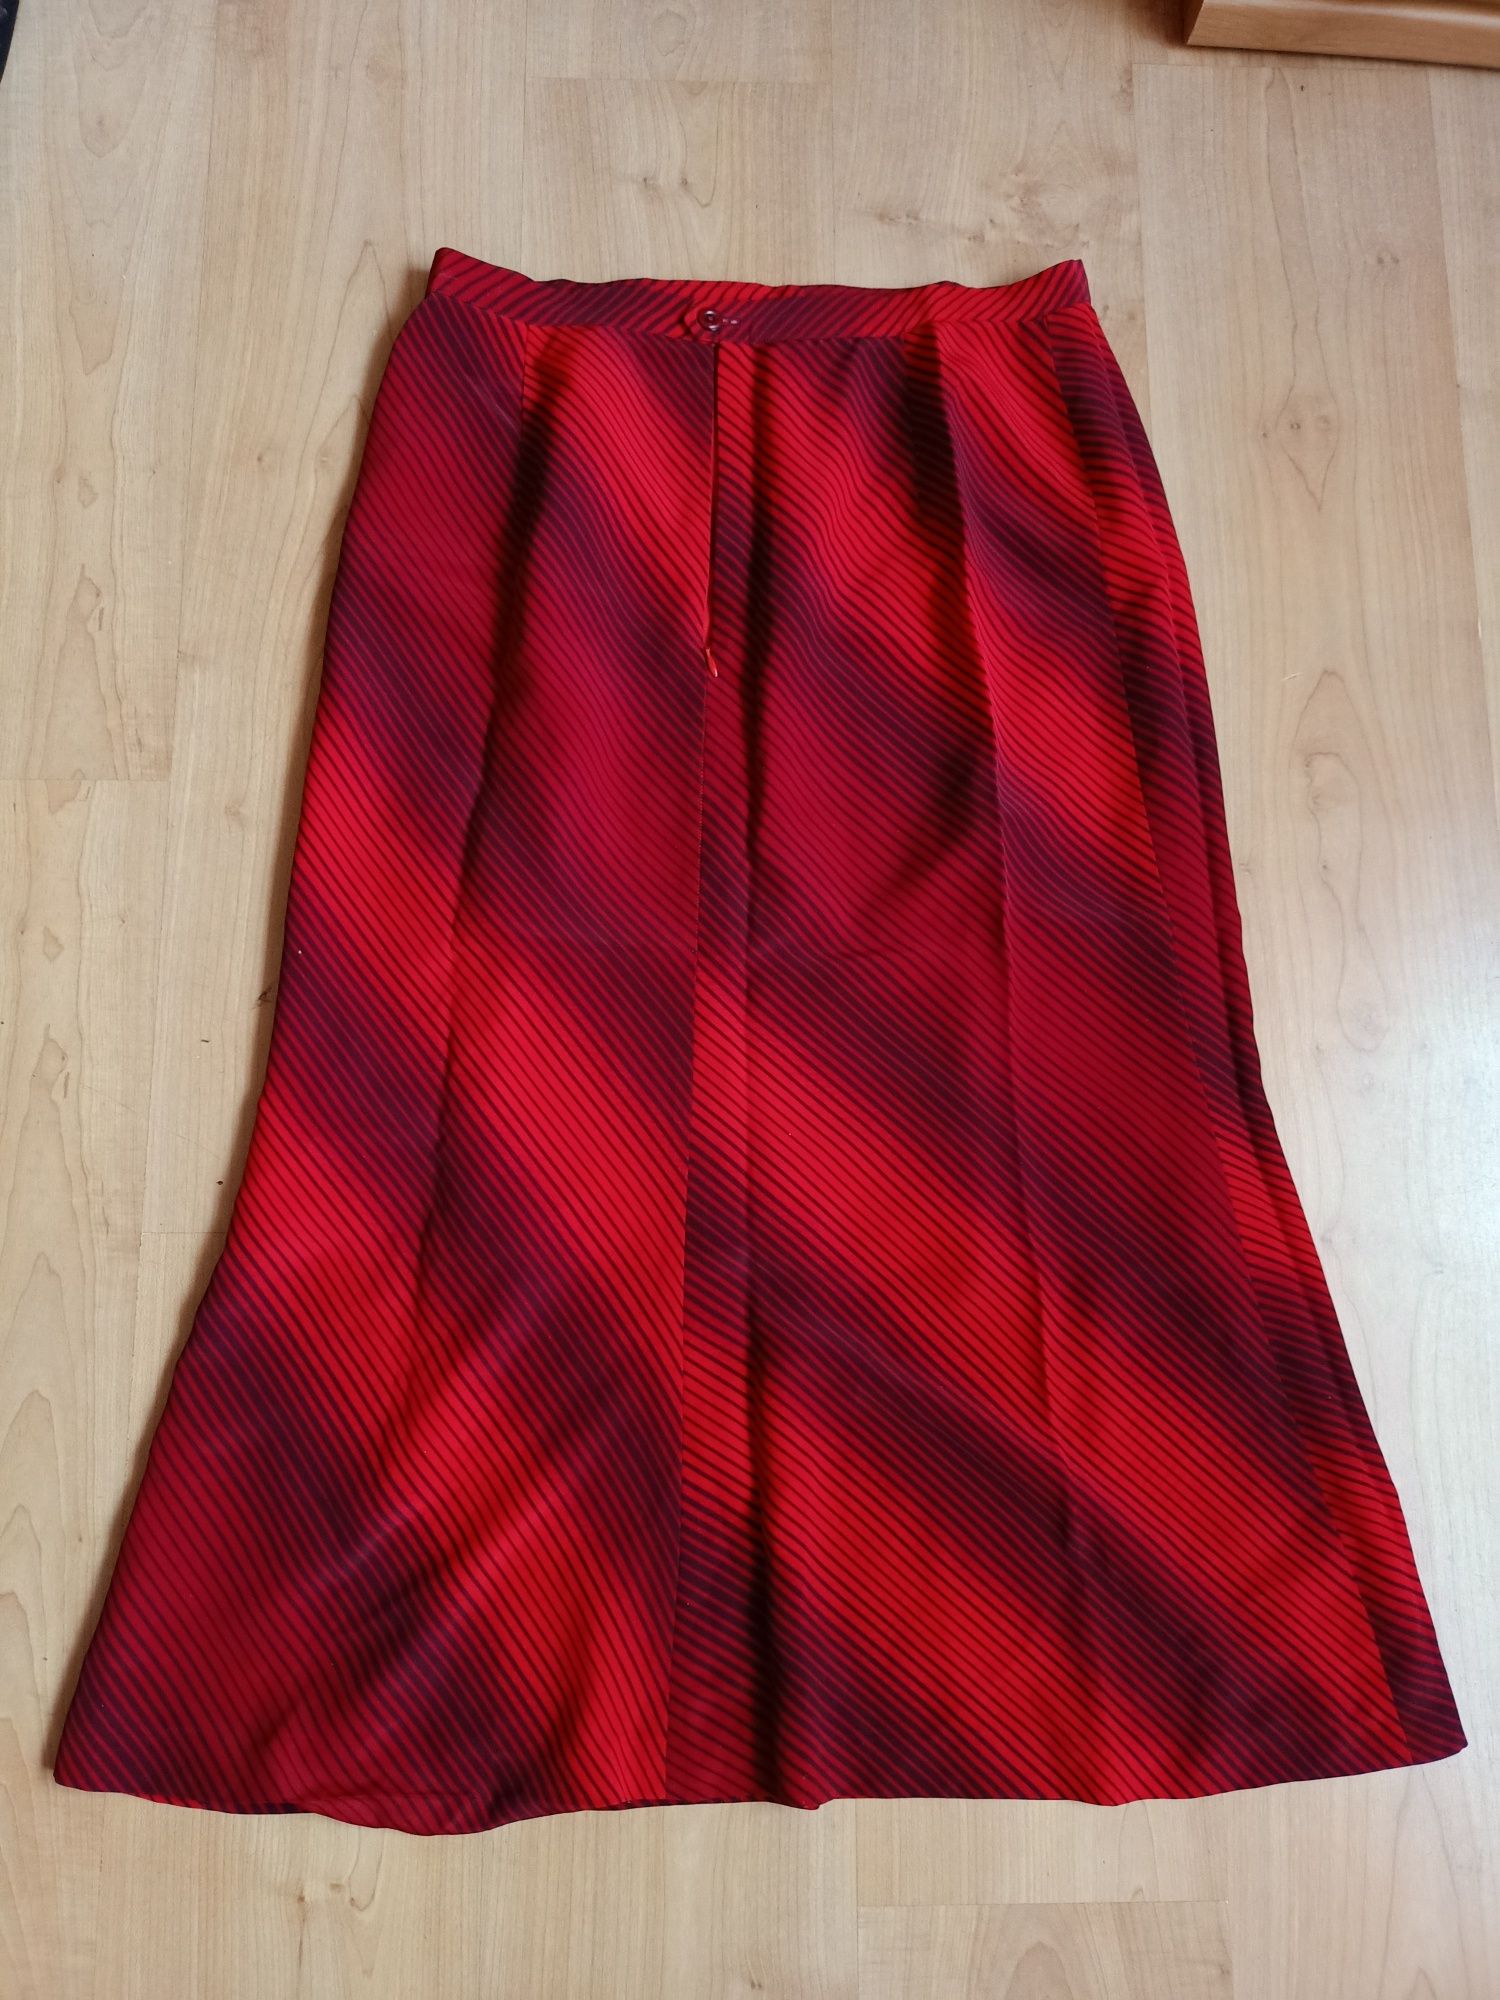 Spódnica czerwona długa